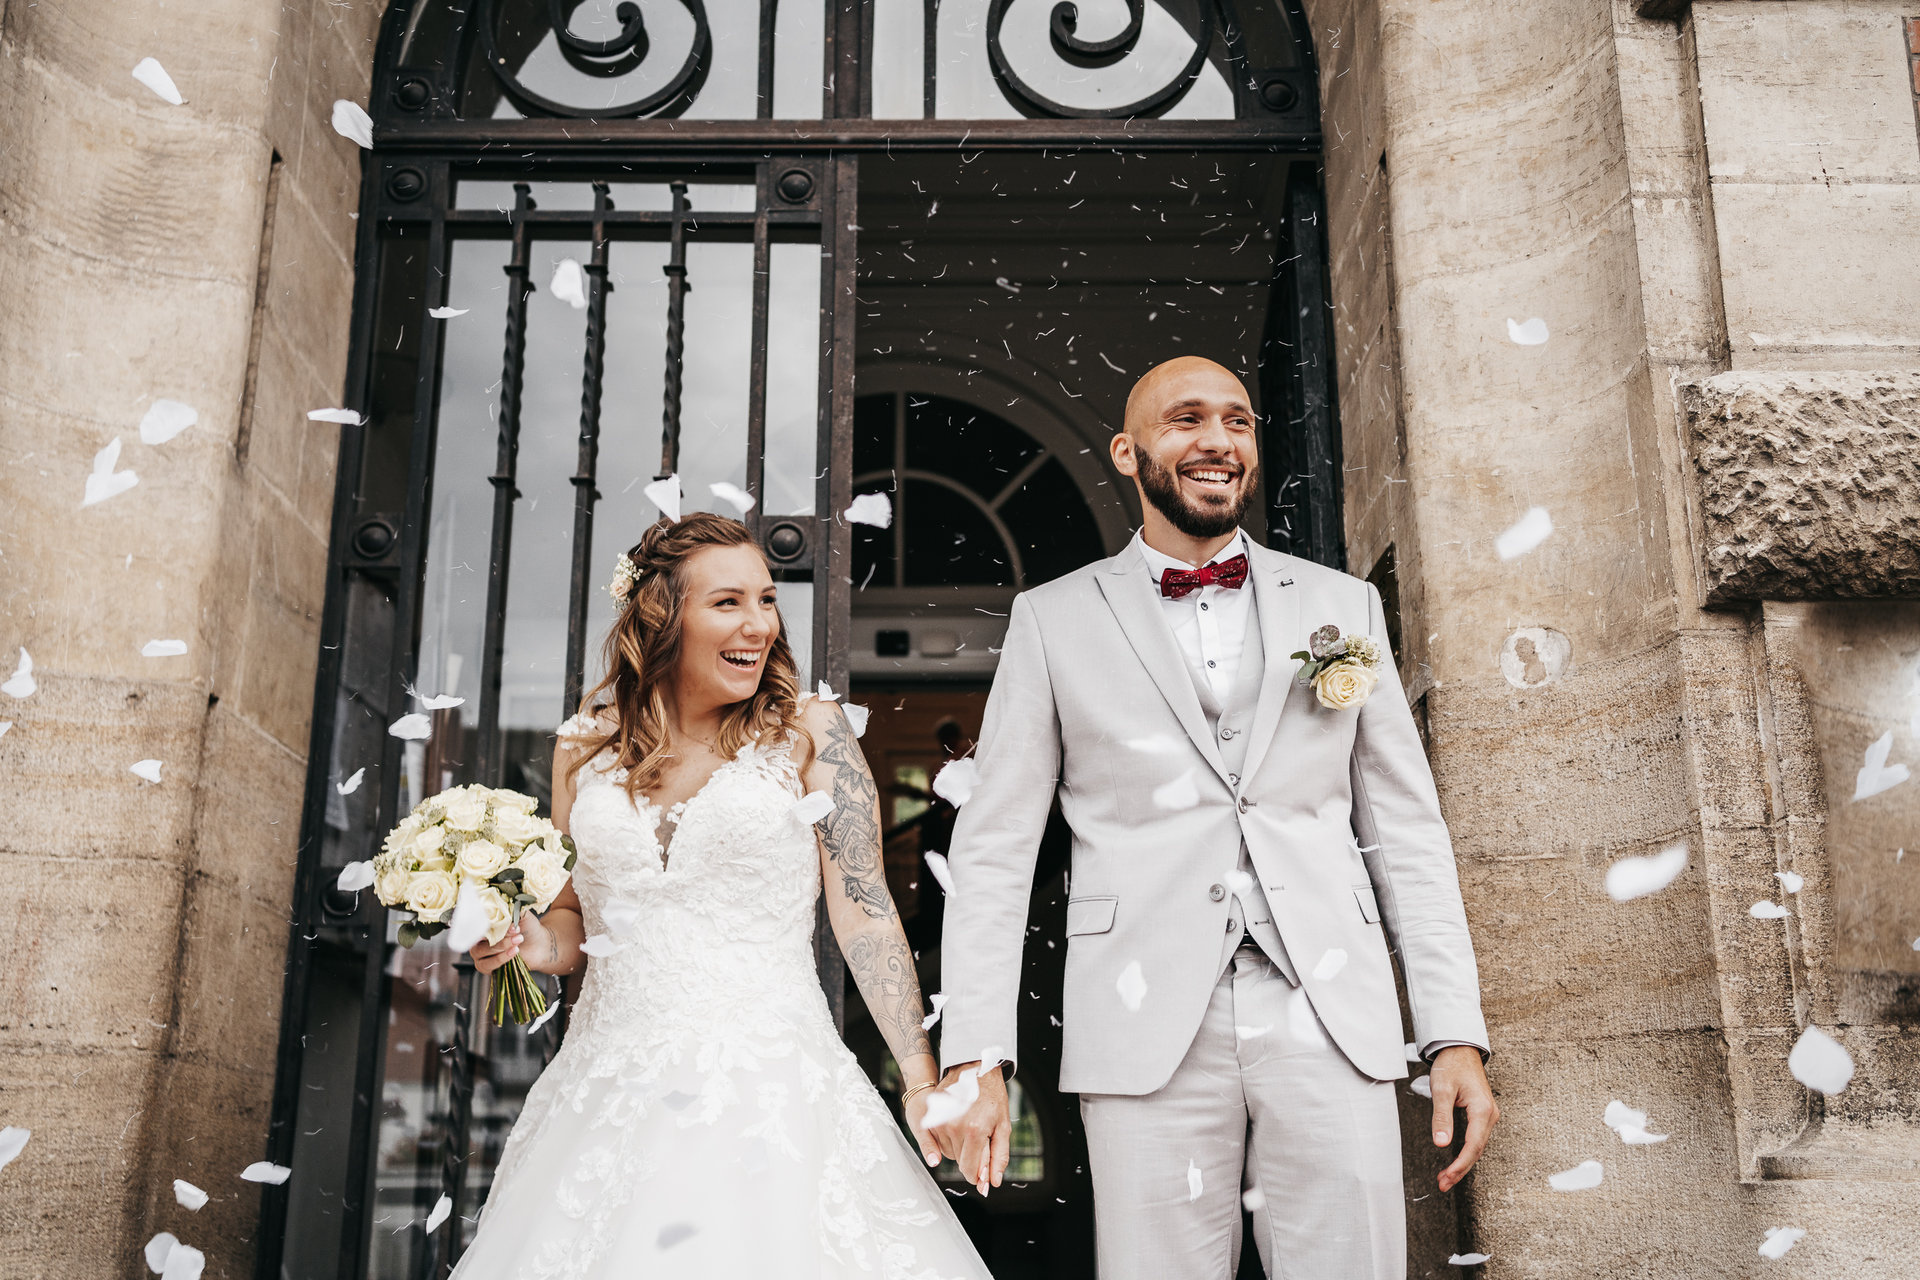 Une mariée et un marié sortent d'un immeuble avec des confettis lancés sur eux.